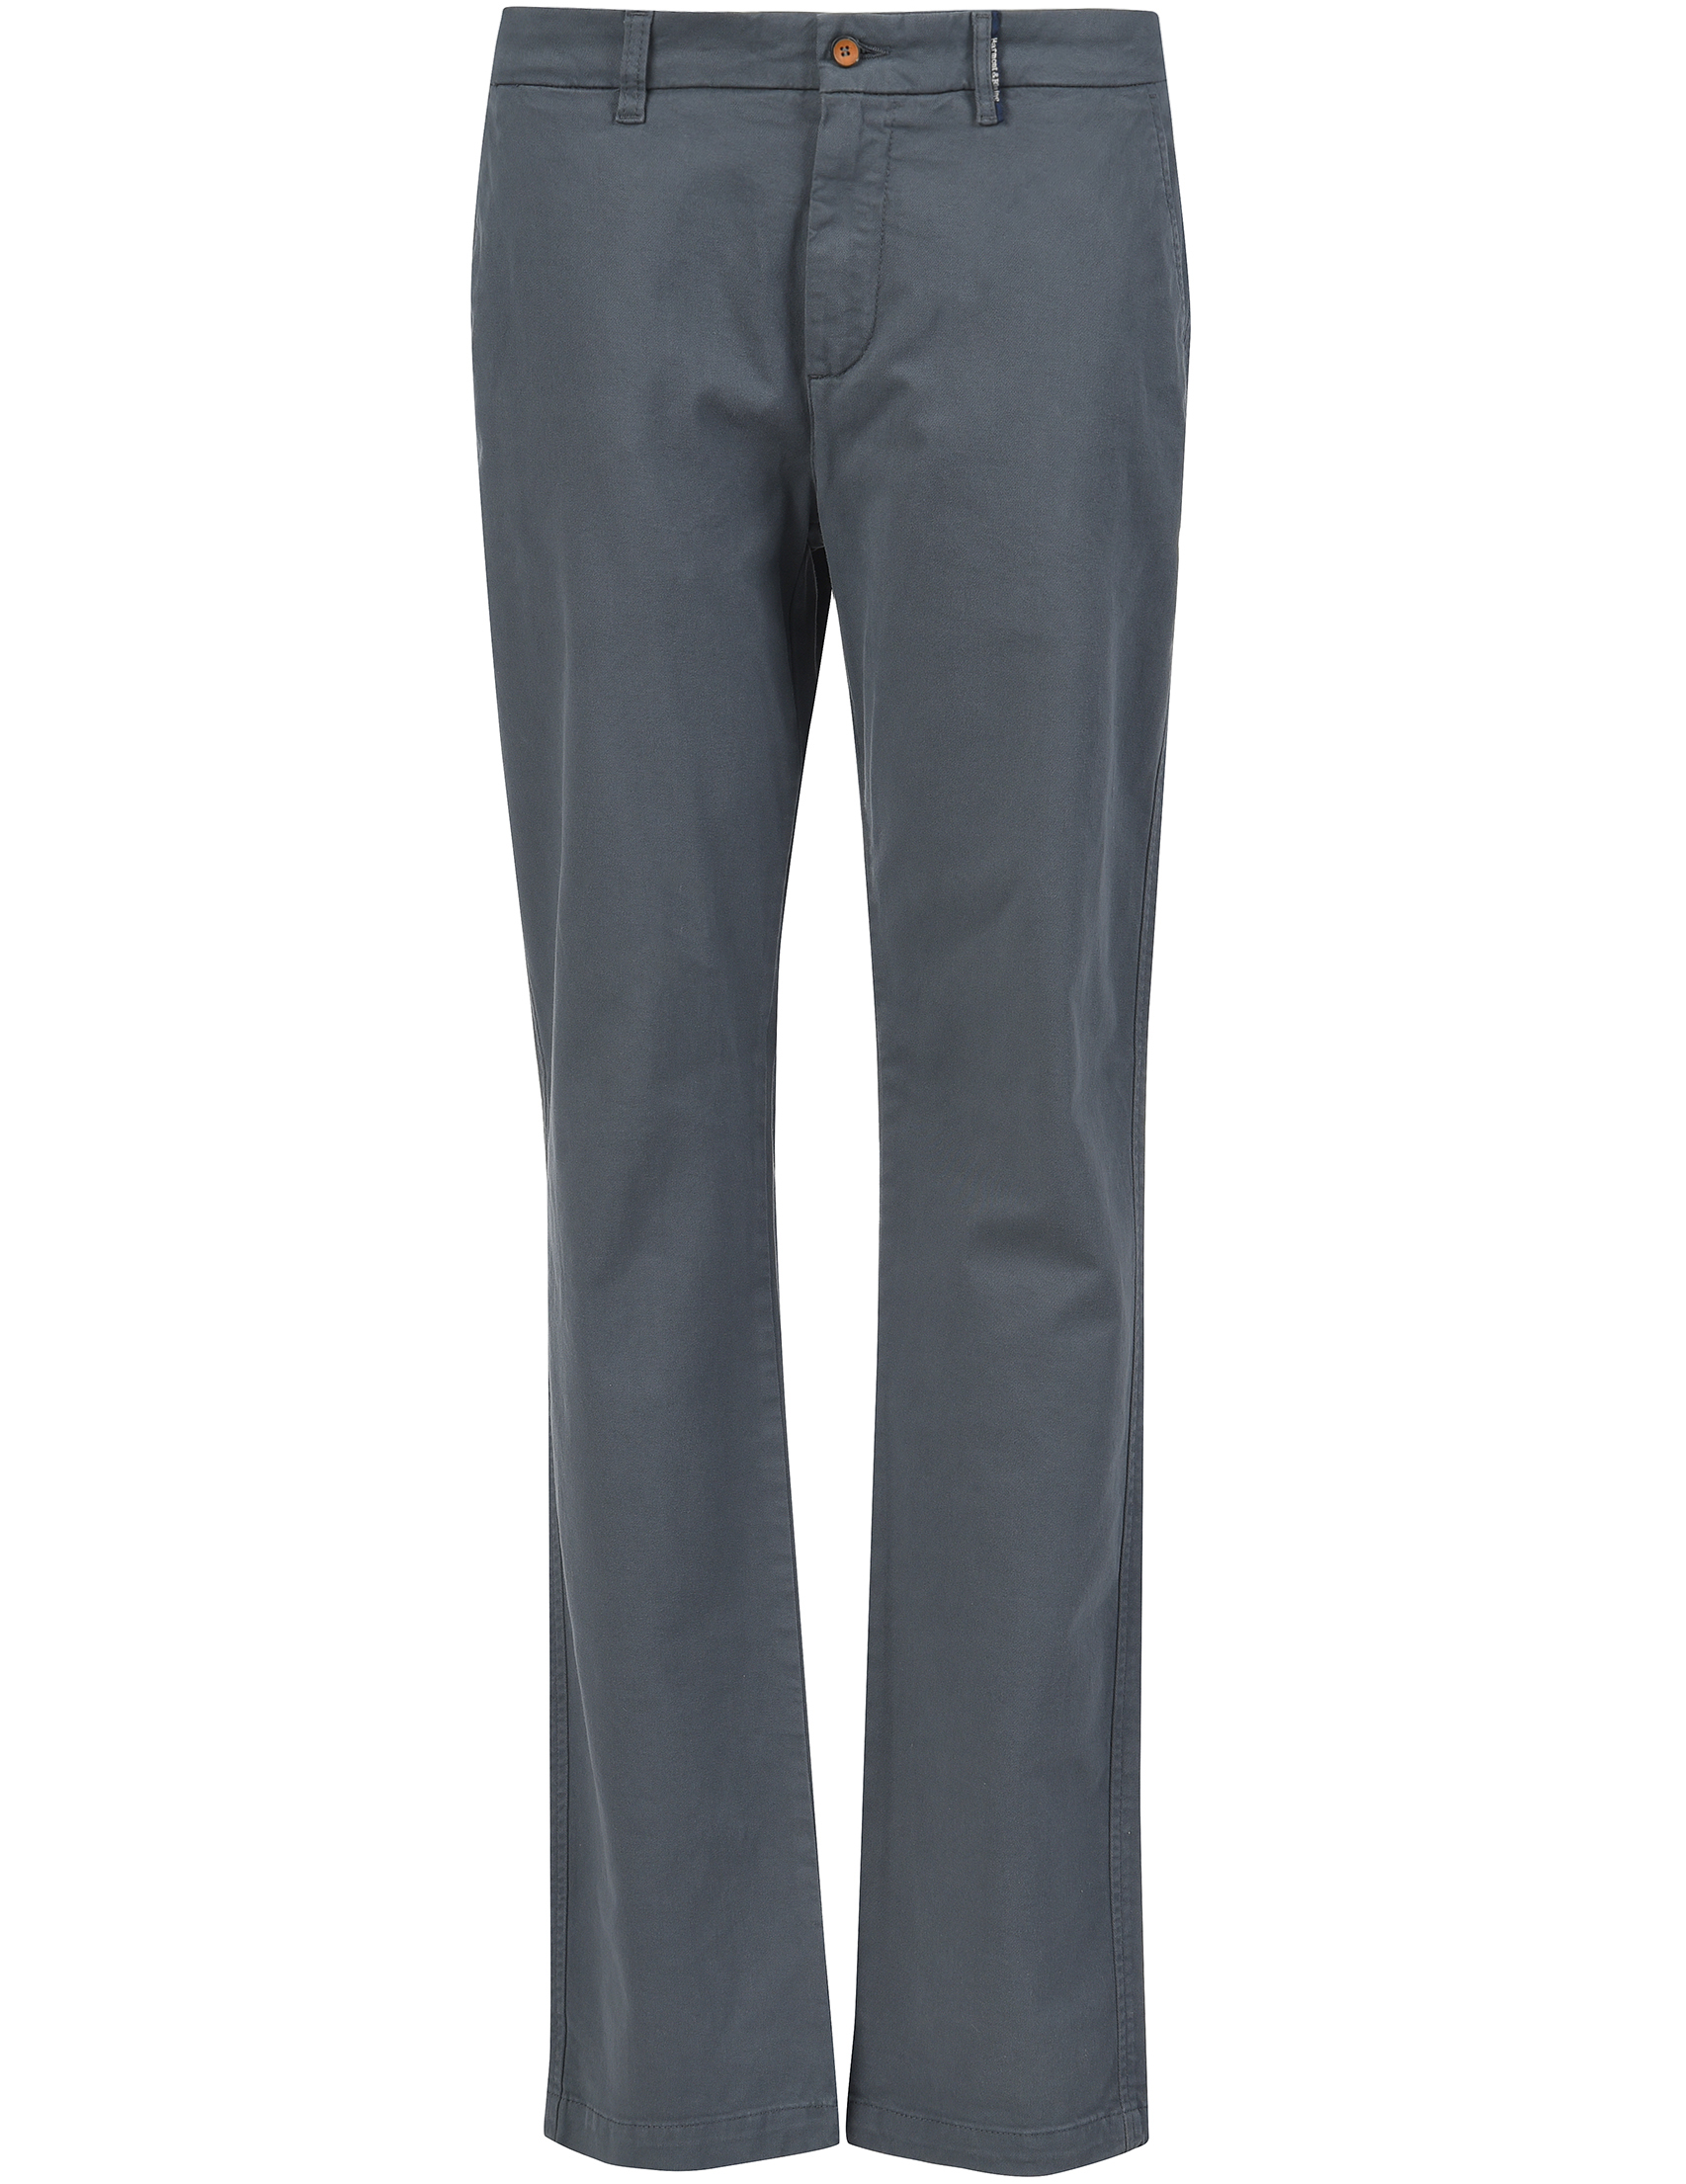 Мужские брюки HARMONTBLAINE PW301652053902_gray